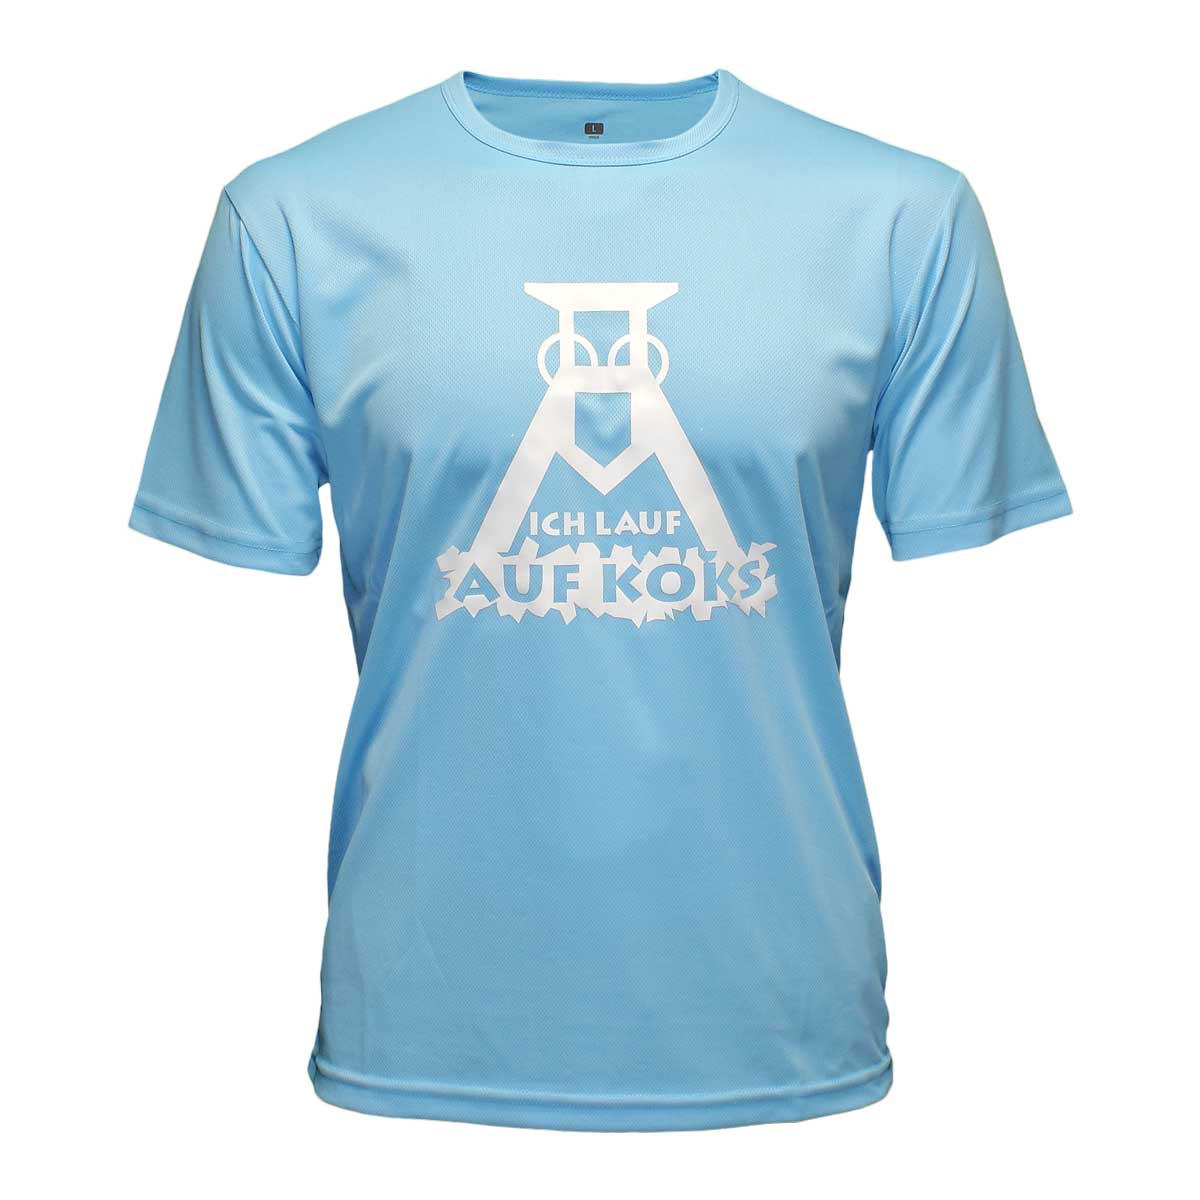 Ich lauf auf Koks Funktions T-Shirt bright-blue für Männers von Lauflust